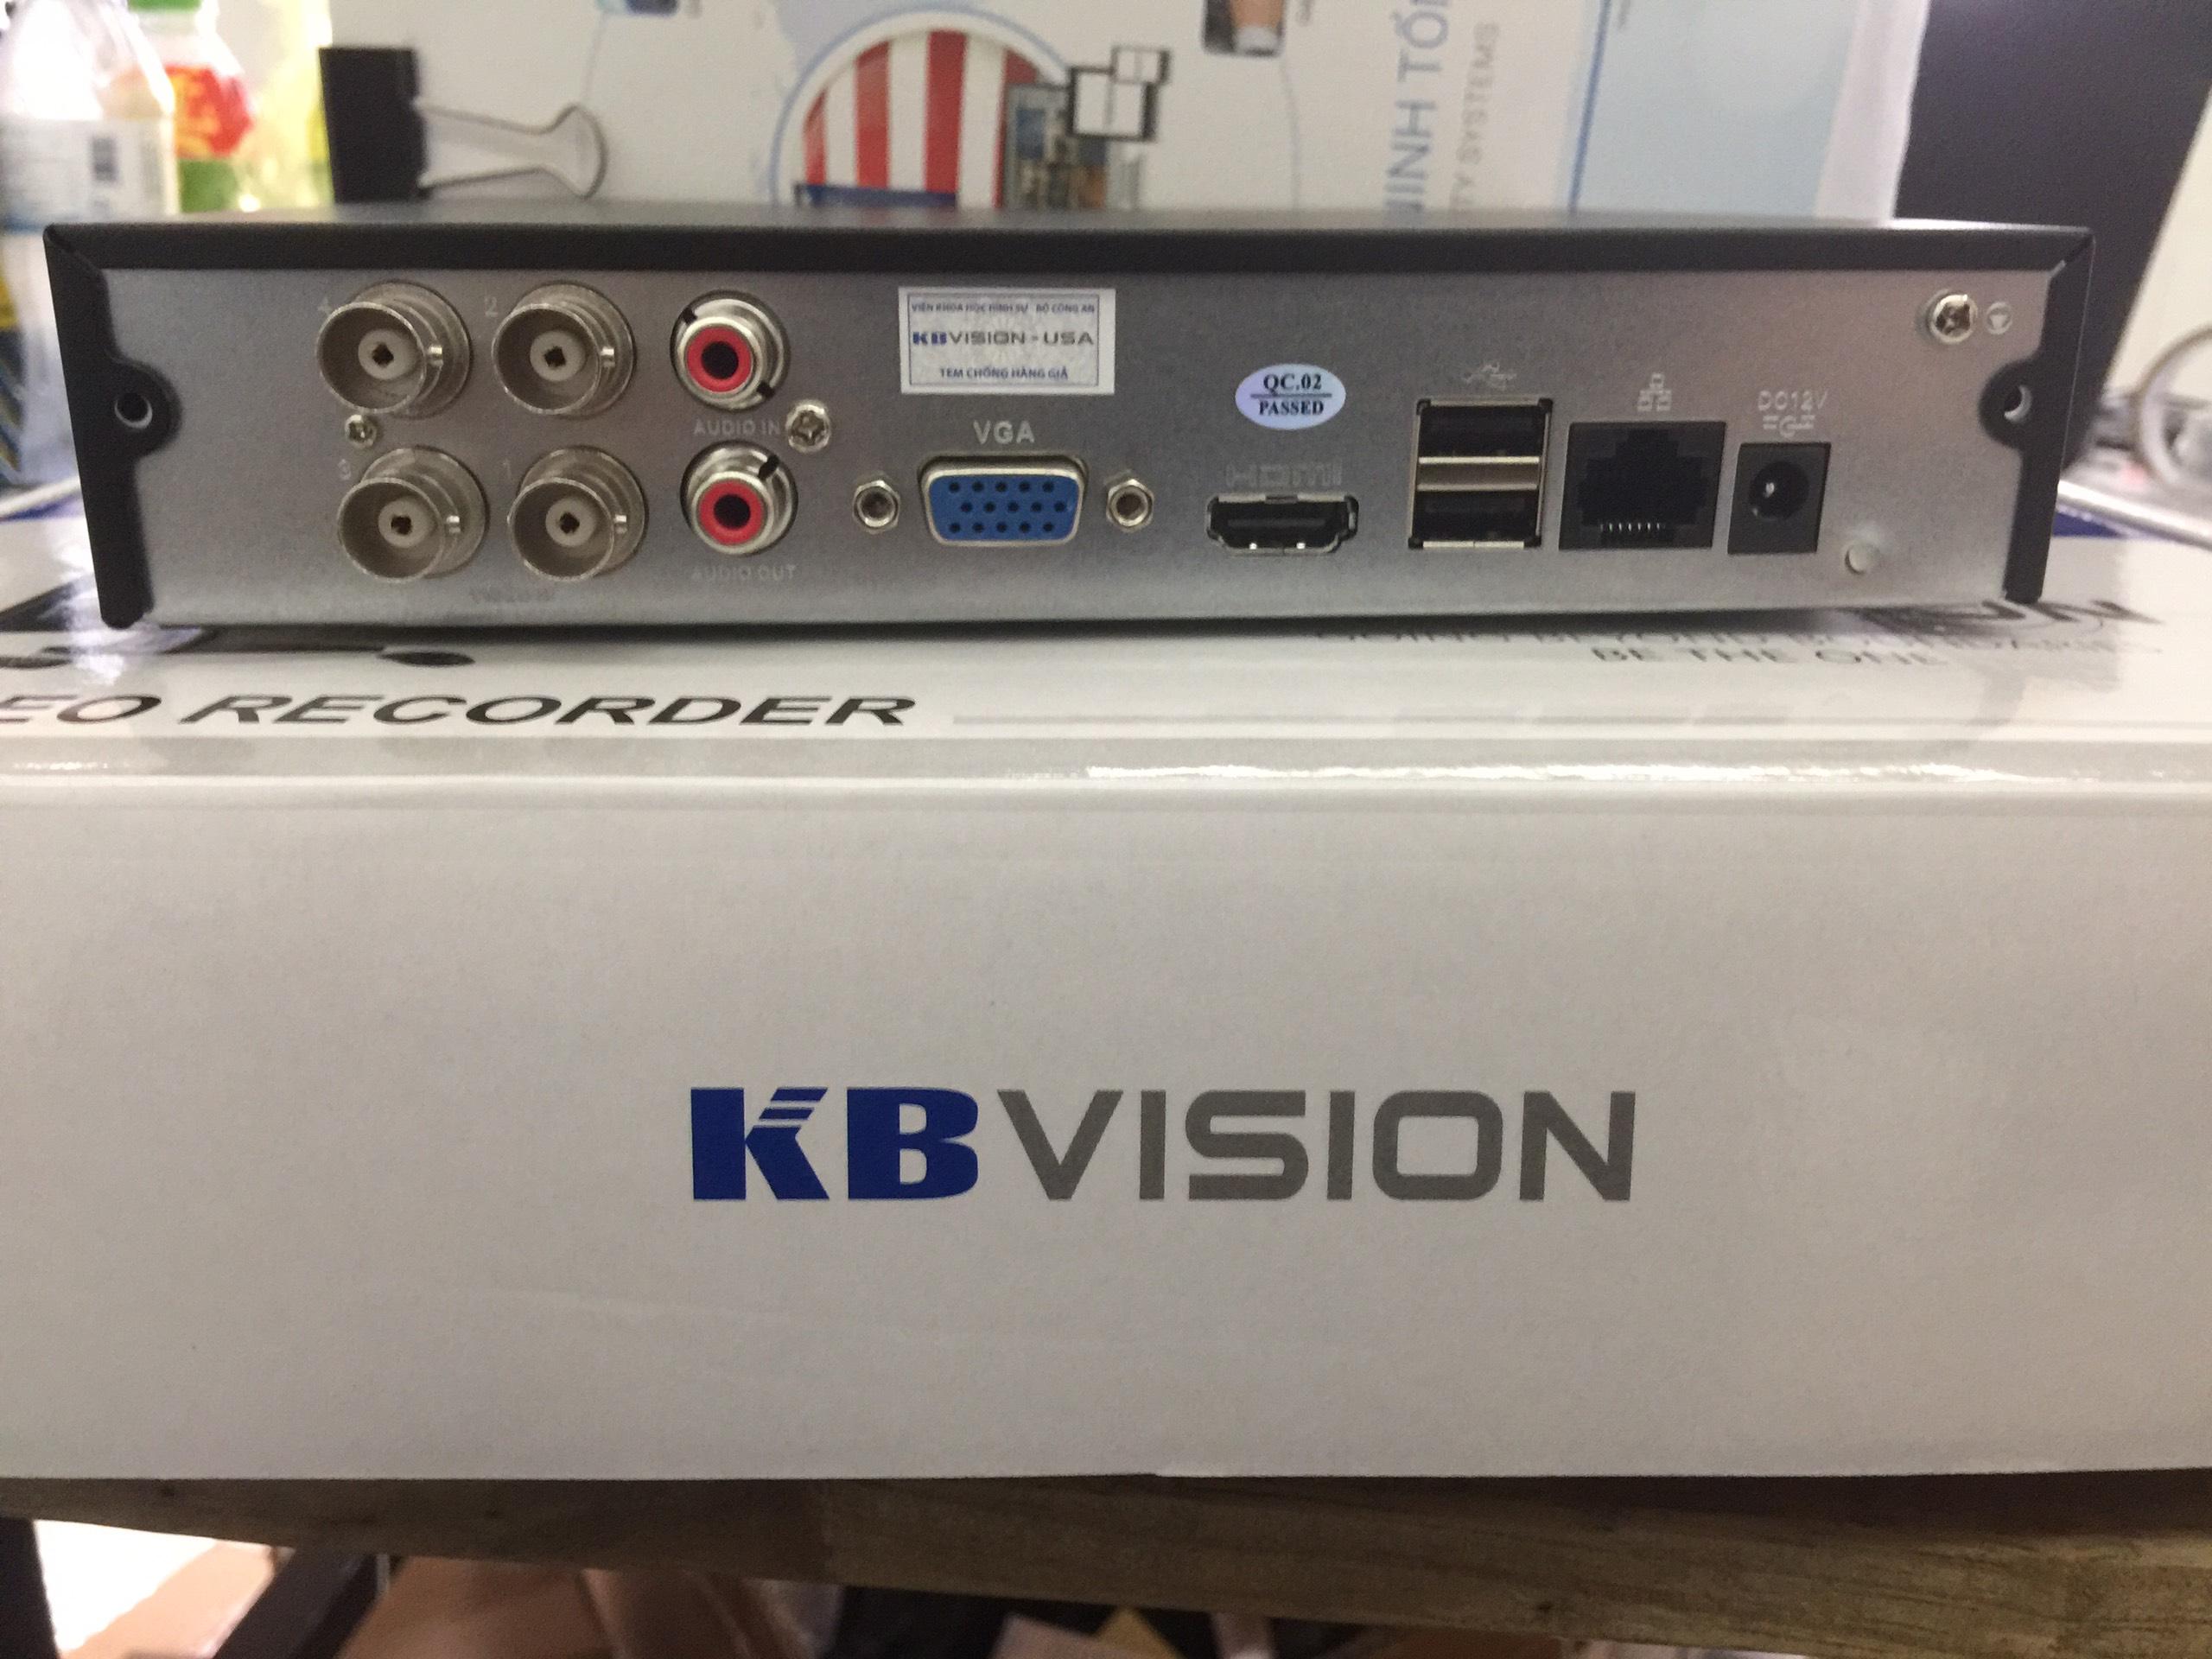 Đầu ghi 4 kênh 5in1 KBVISION KX-7104SD6